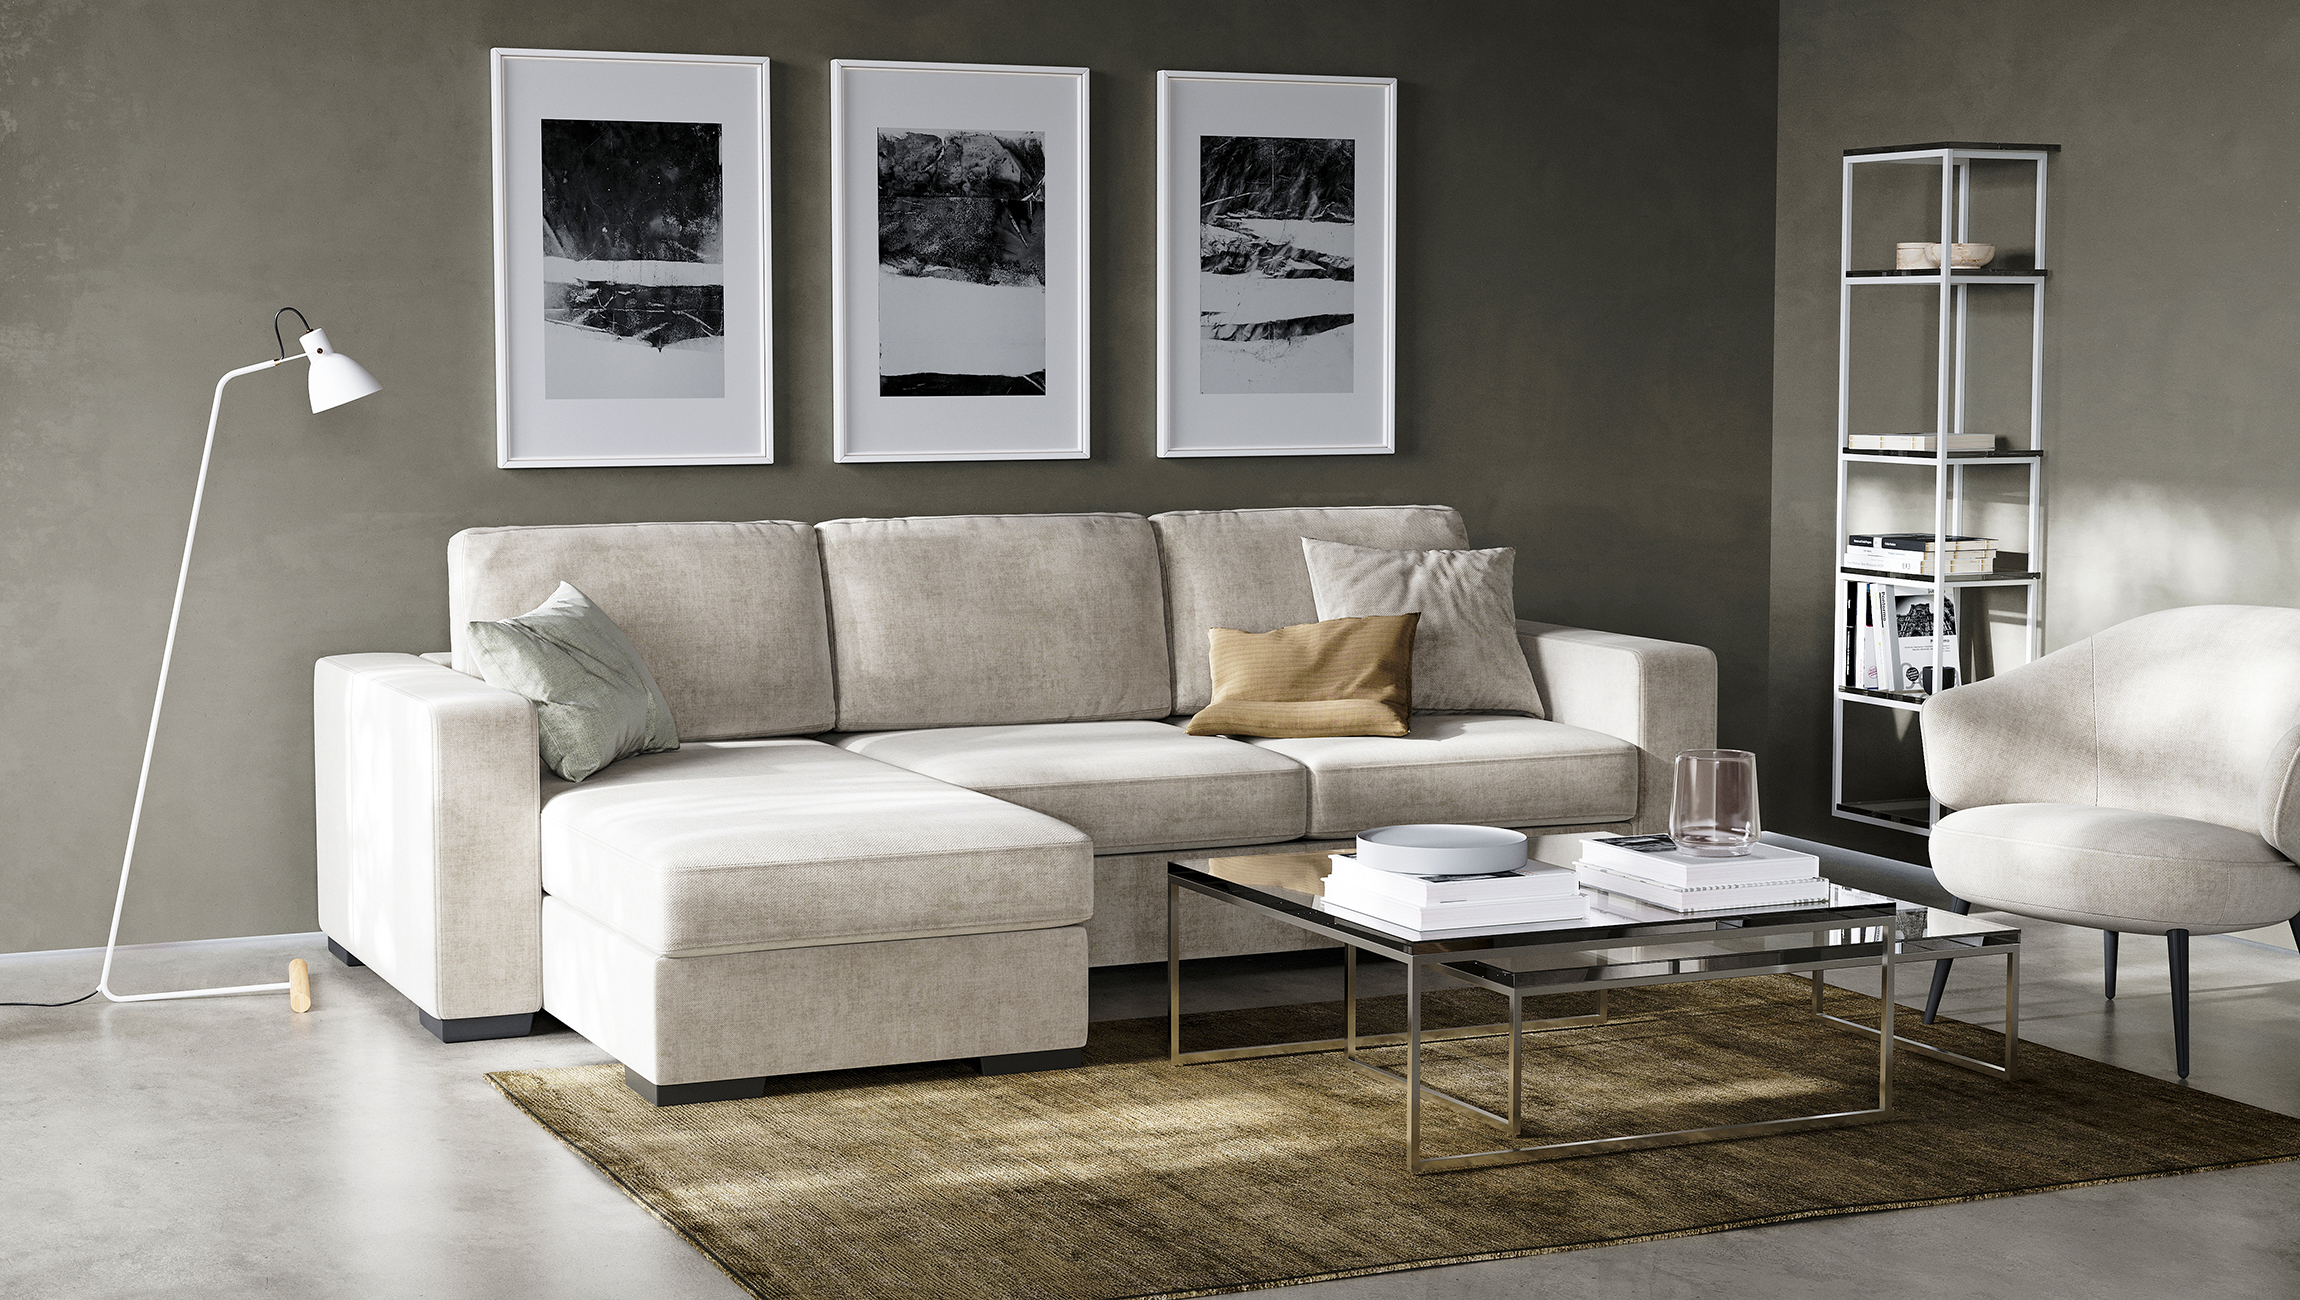 Какой диван выбрать: угловой или прямой?